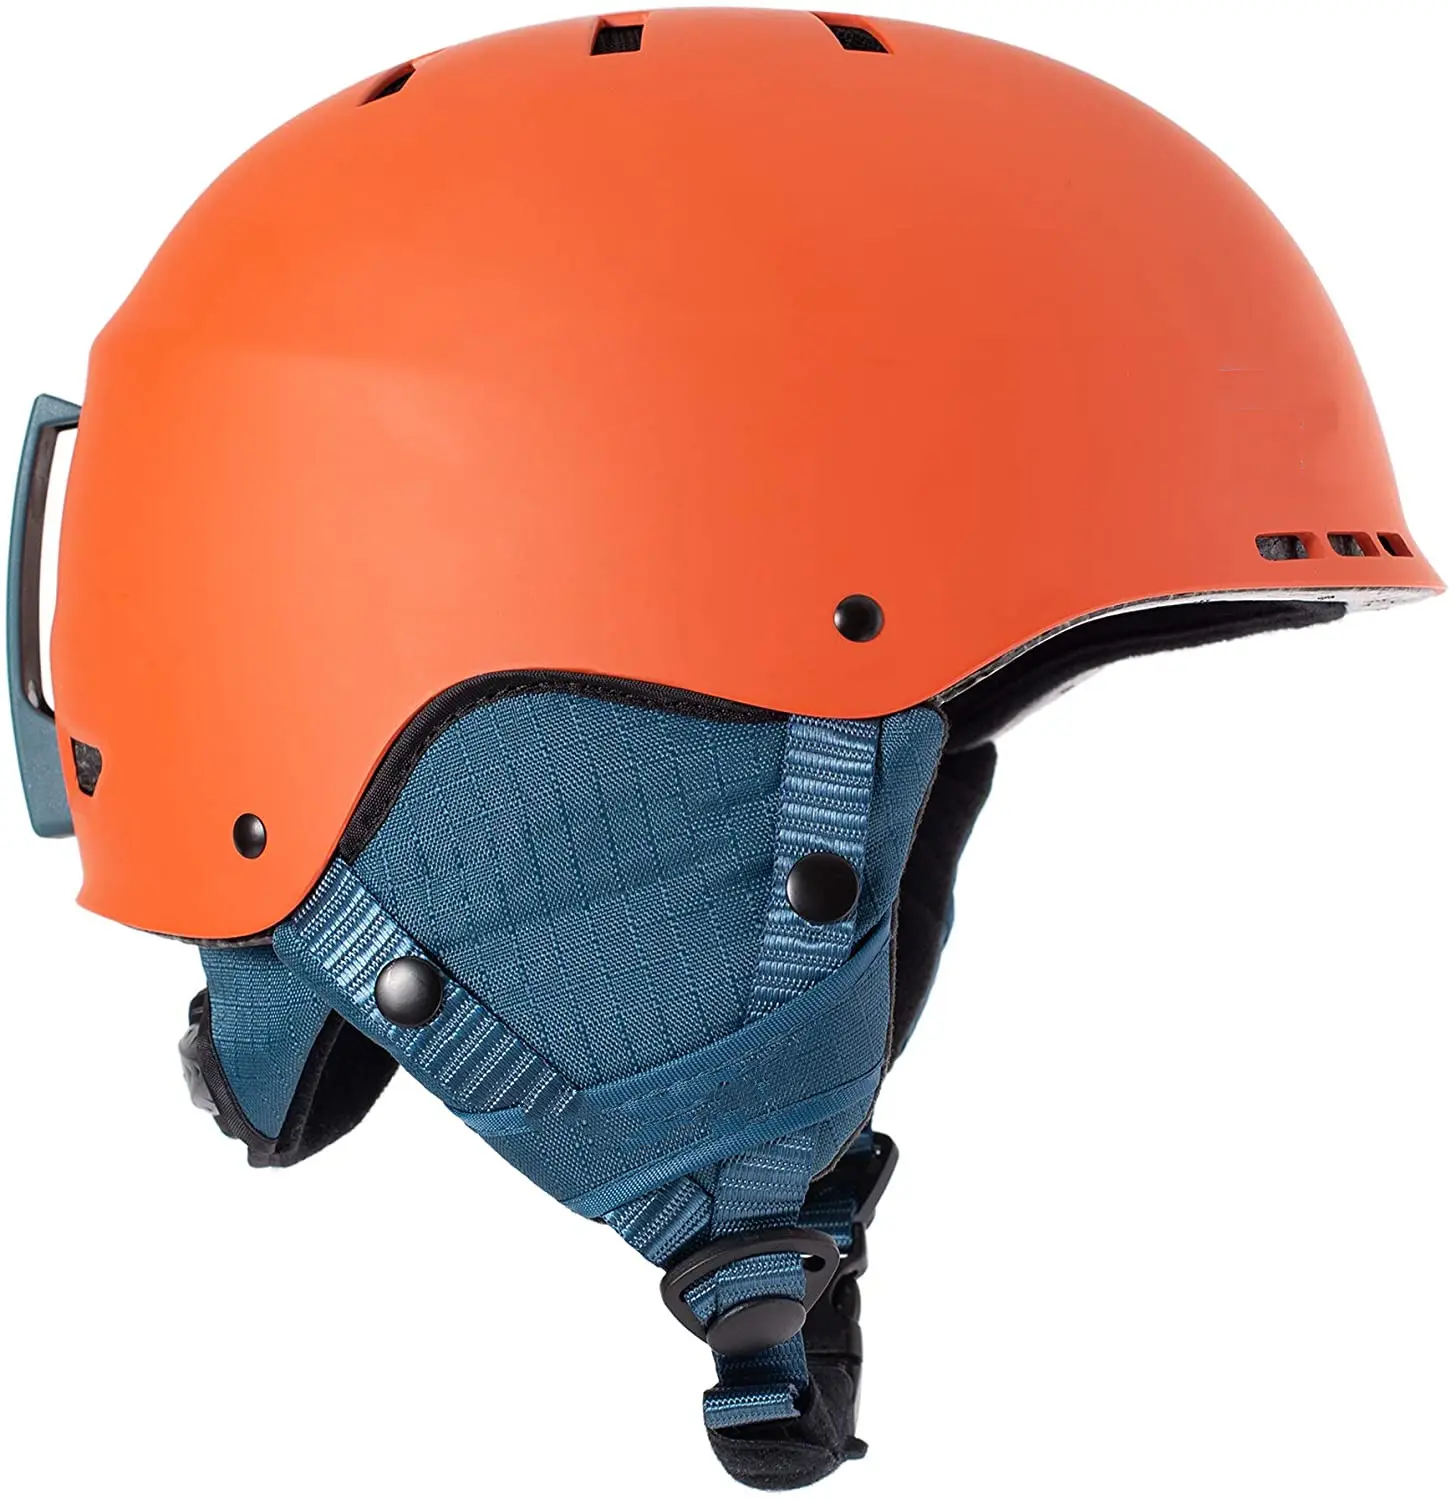 หมวกกันน็อคแบบเปิดหน้าระบายอากาศได้ดี,หมวกกันน็อคสำหรับปั่นจักรยานสามารถเปิดได้พร้อมช่องระบายอากาศ10ช่องขนาดใหญ่สีด้านสีส้ม